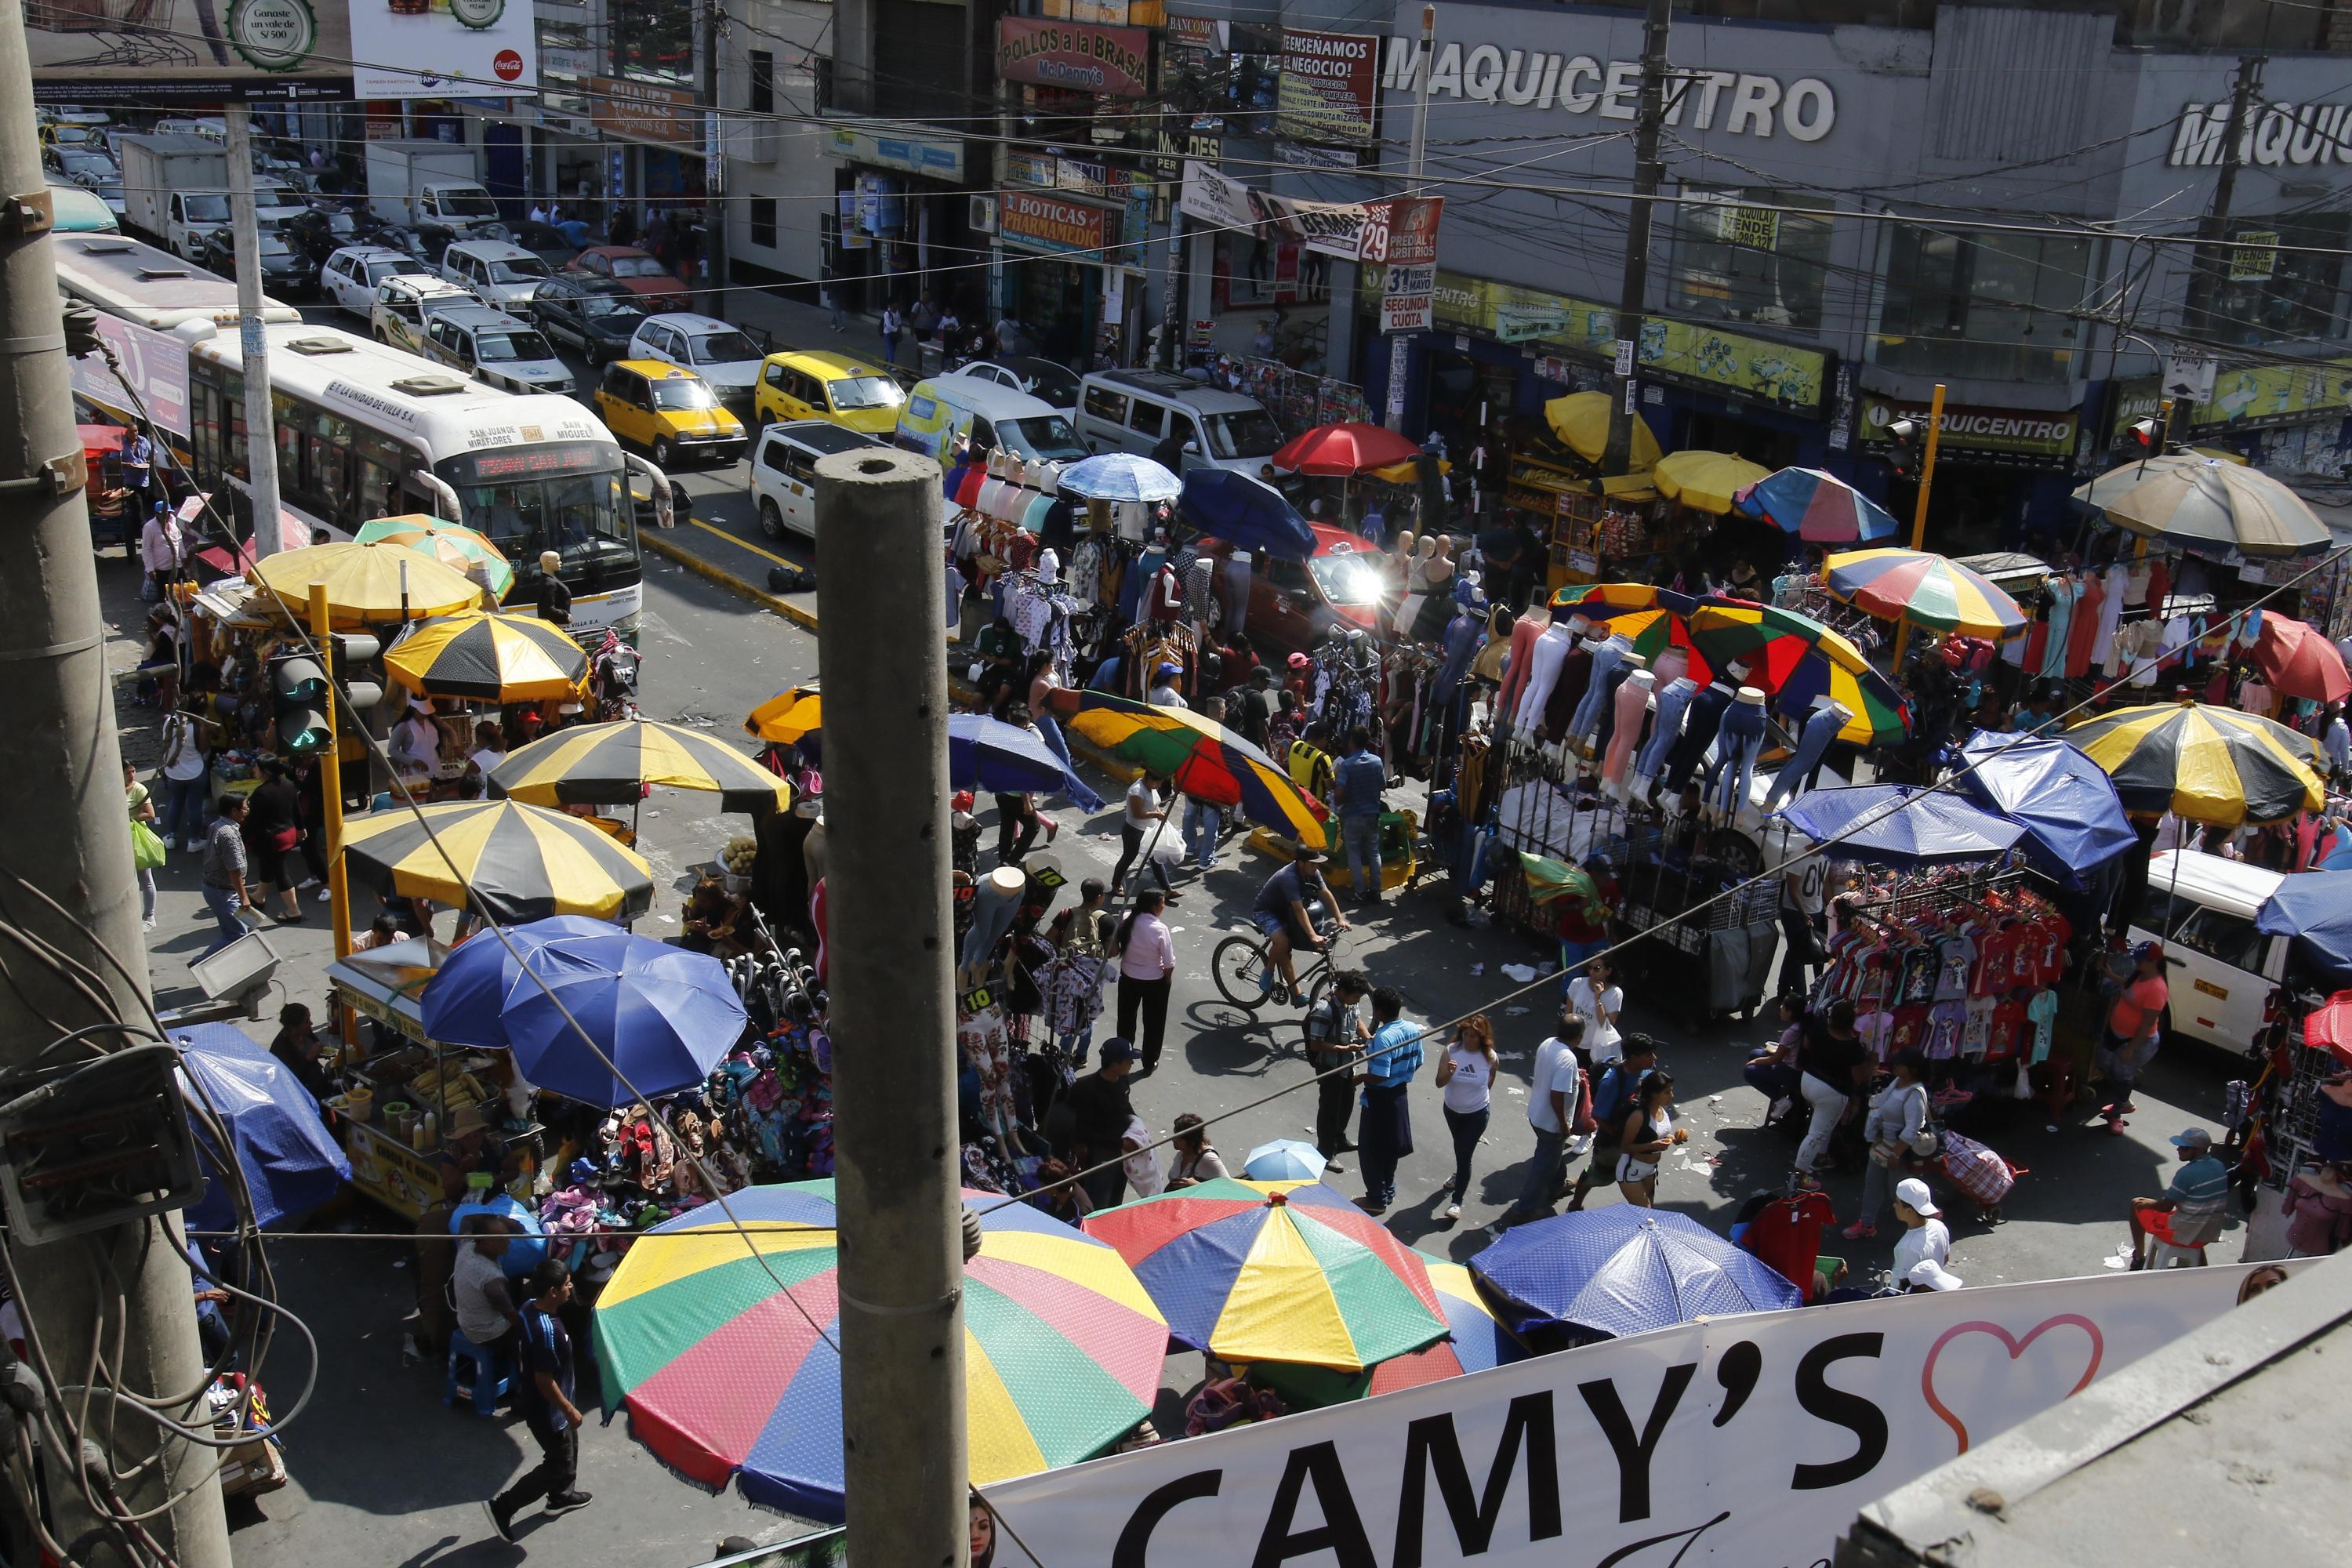 Comerciantes informales han armado puestos de comida en veredas y pistas (Foto: Miguel Bellido)